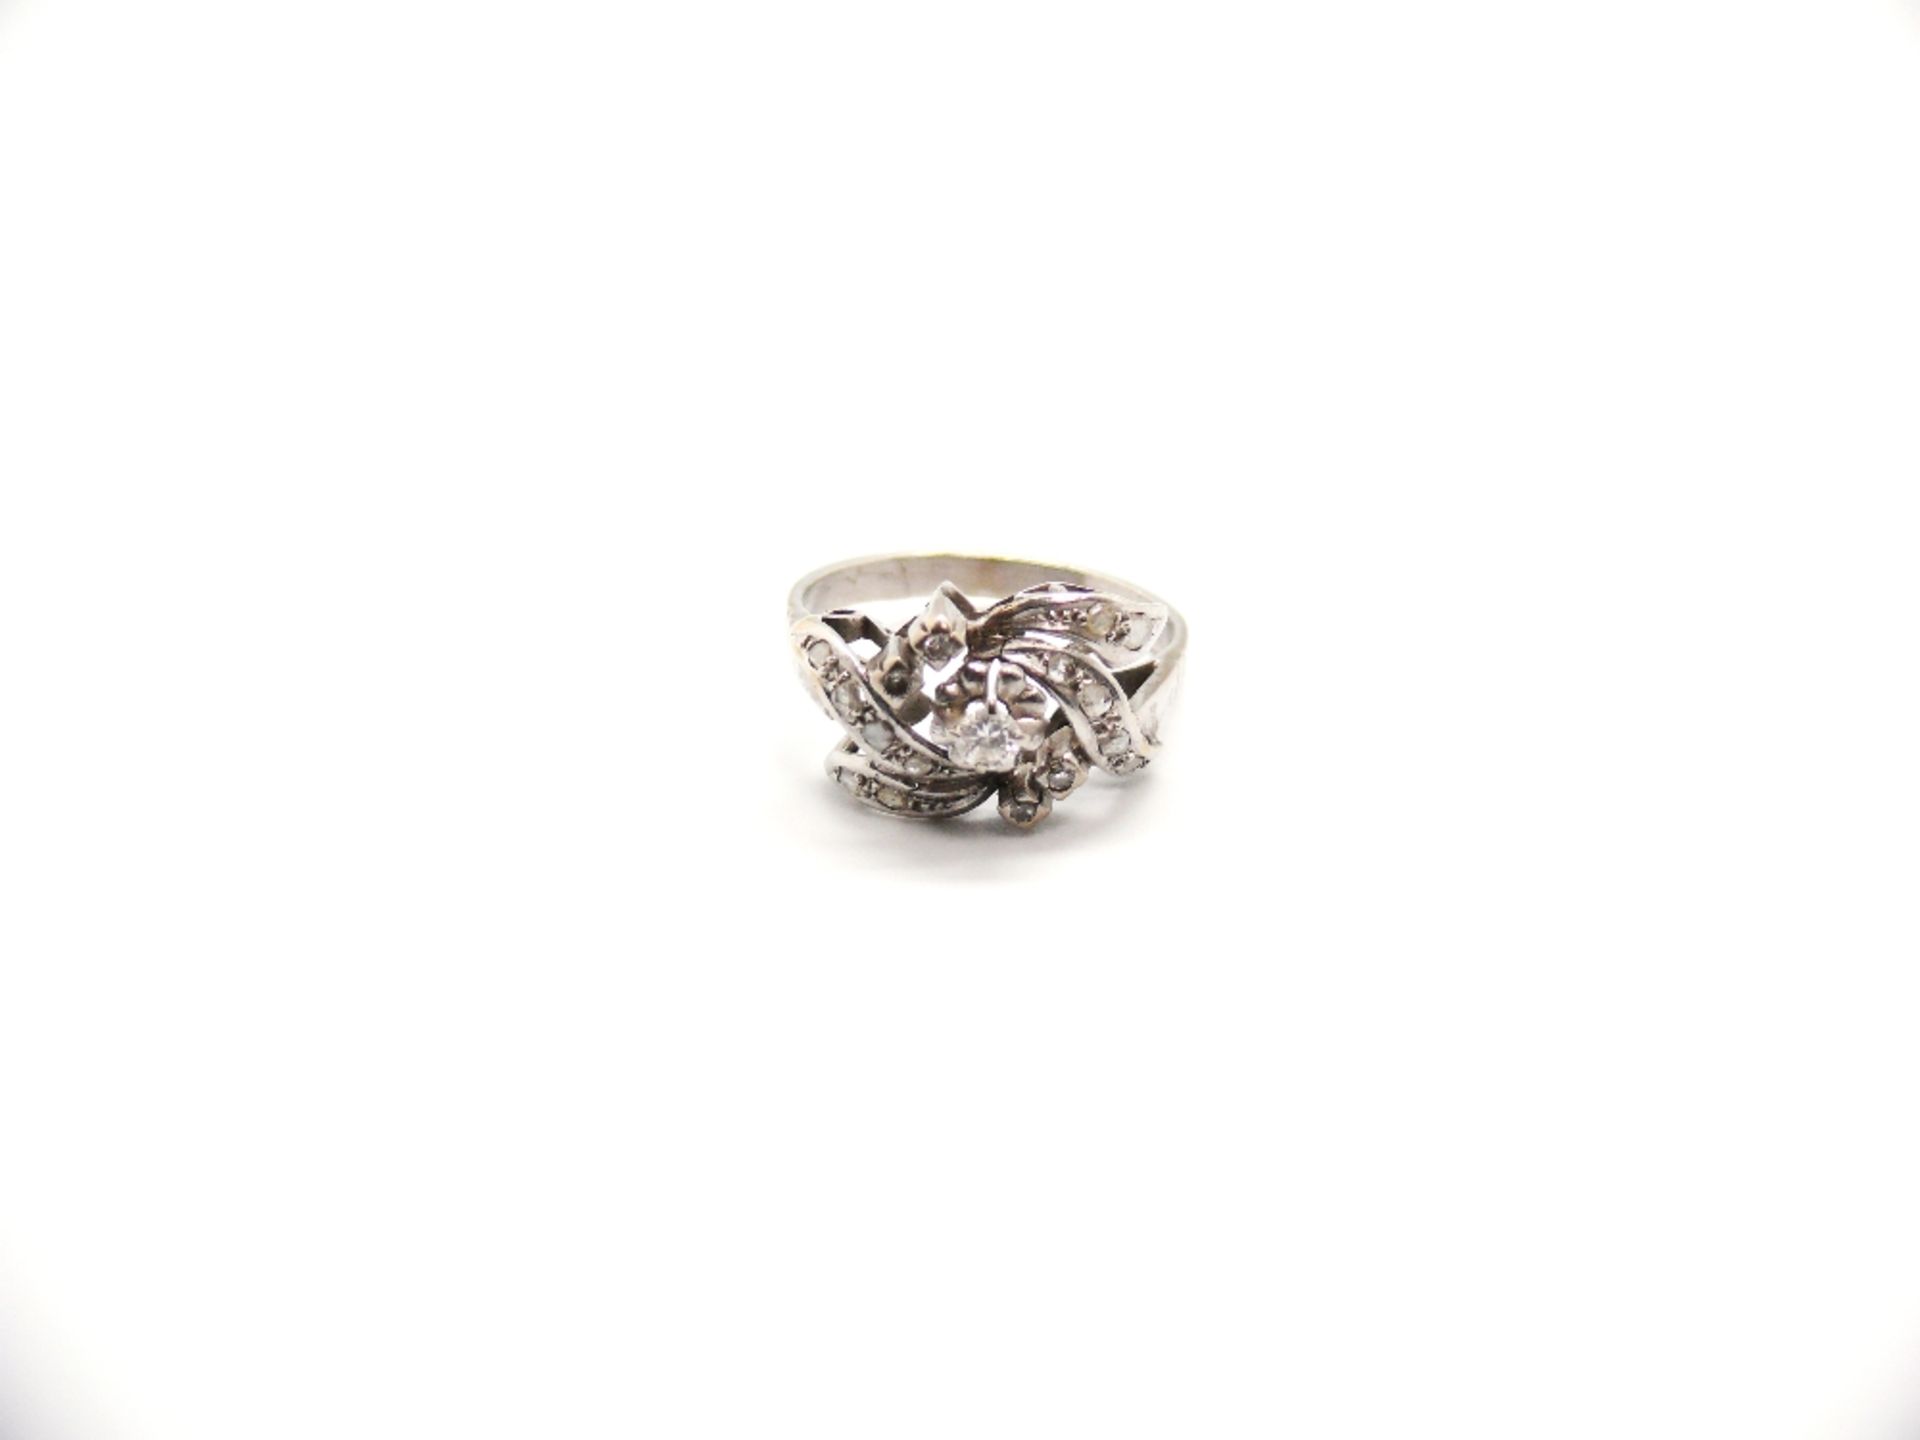 RING Montura en oro blanco, con diamantes talla brillante, 8/8 y rosa (0,20 ct. total aprox.), 4 gr.